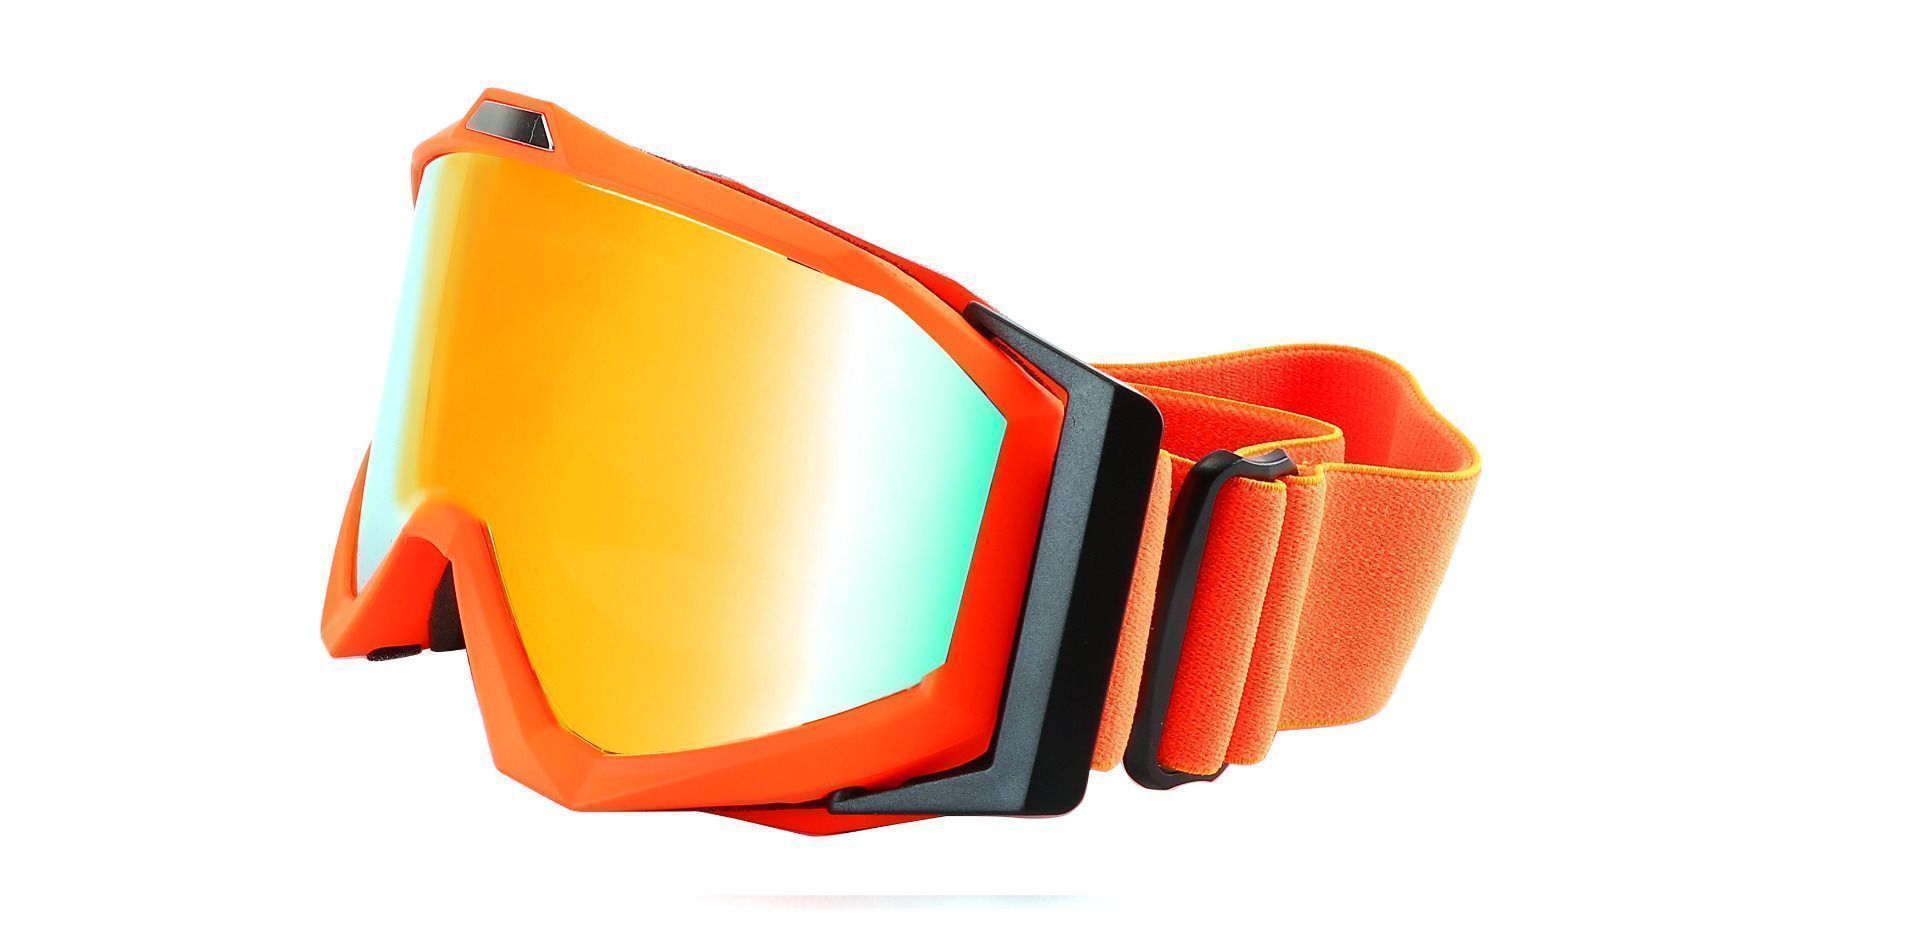 Keystone Ski Goggles Orange Non-Rx Sunglasses